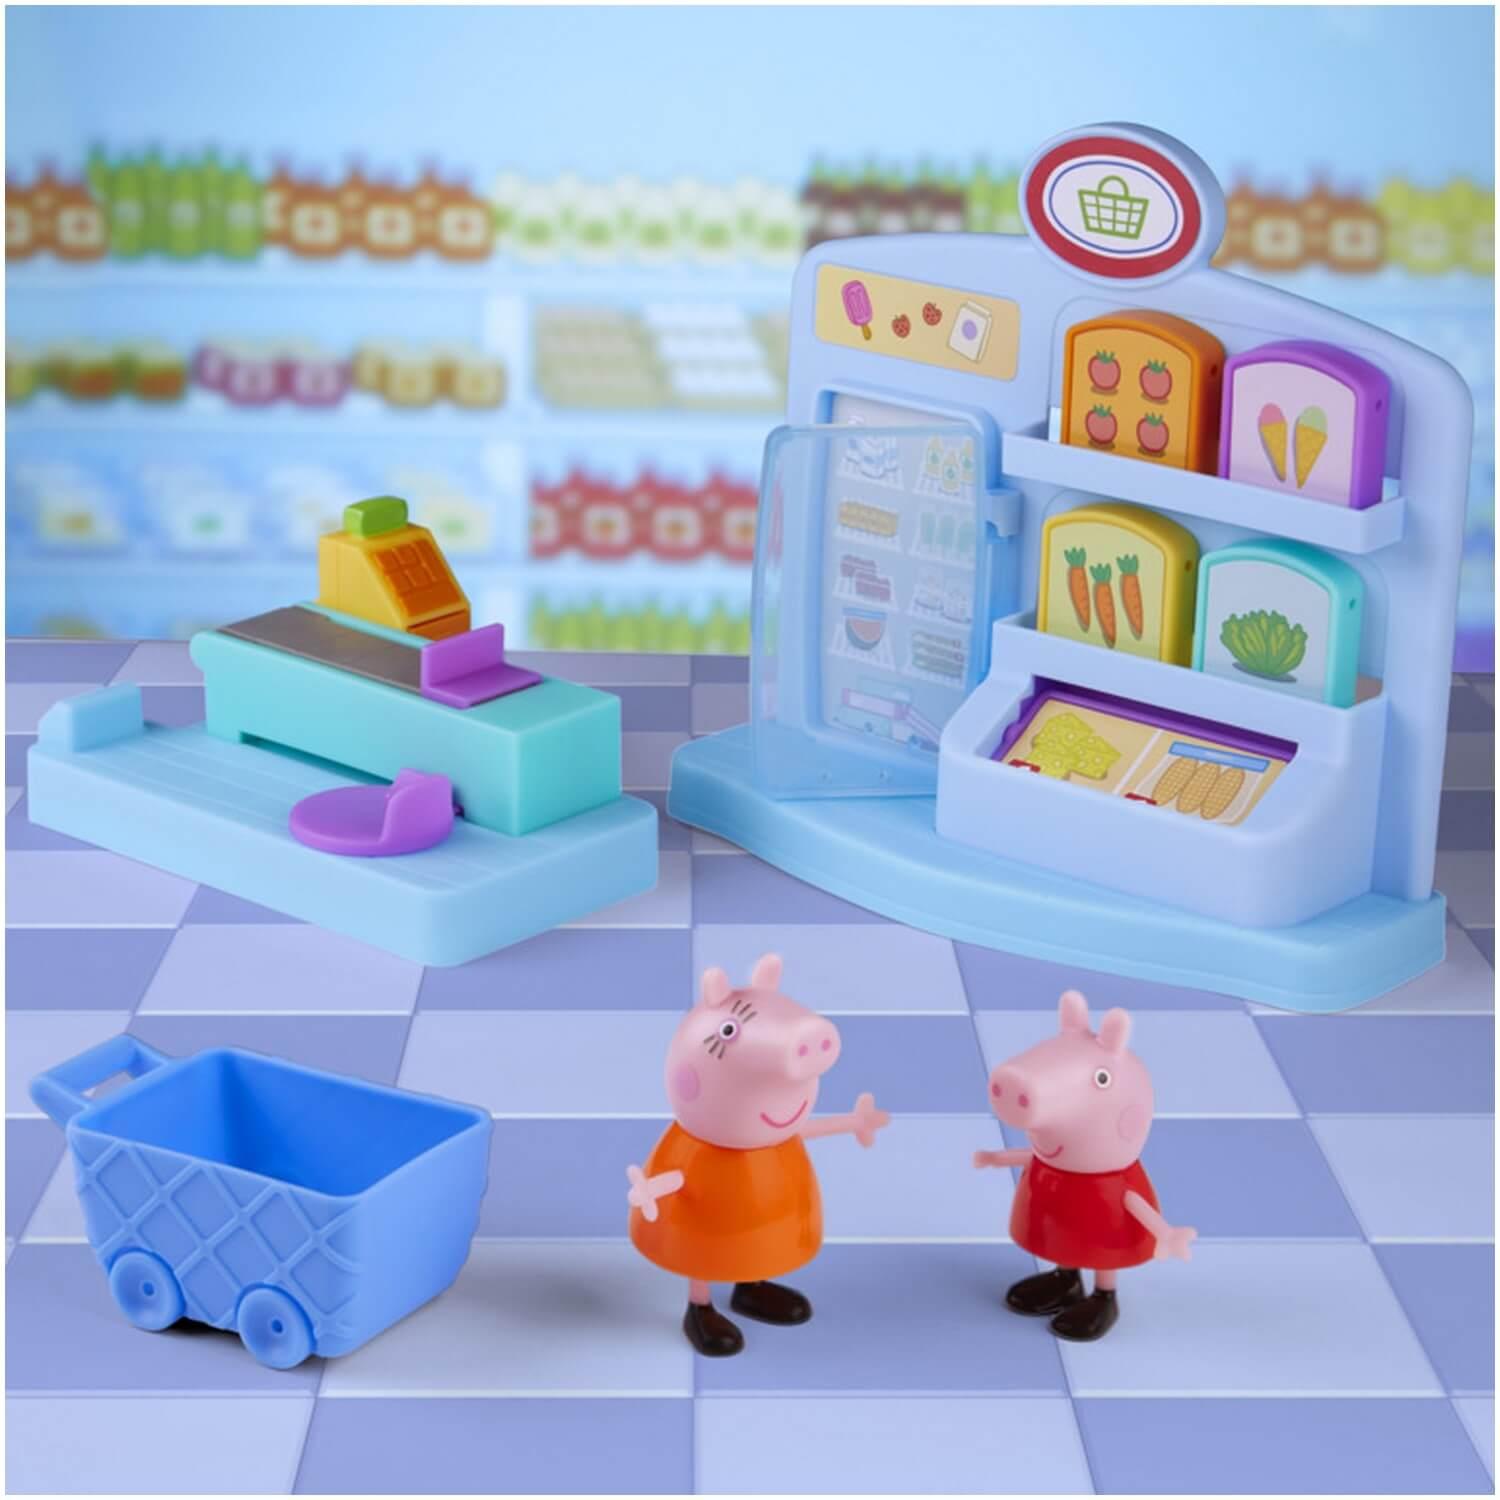 Coffret Peppa Pig : le supermarché - Jeux et jouets Hasbro